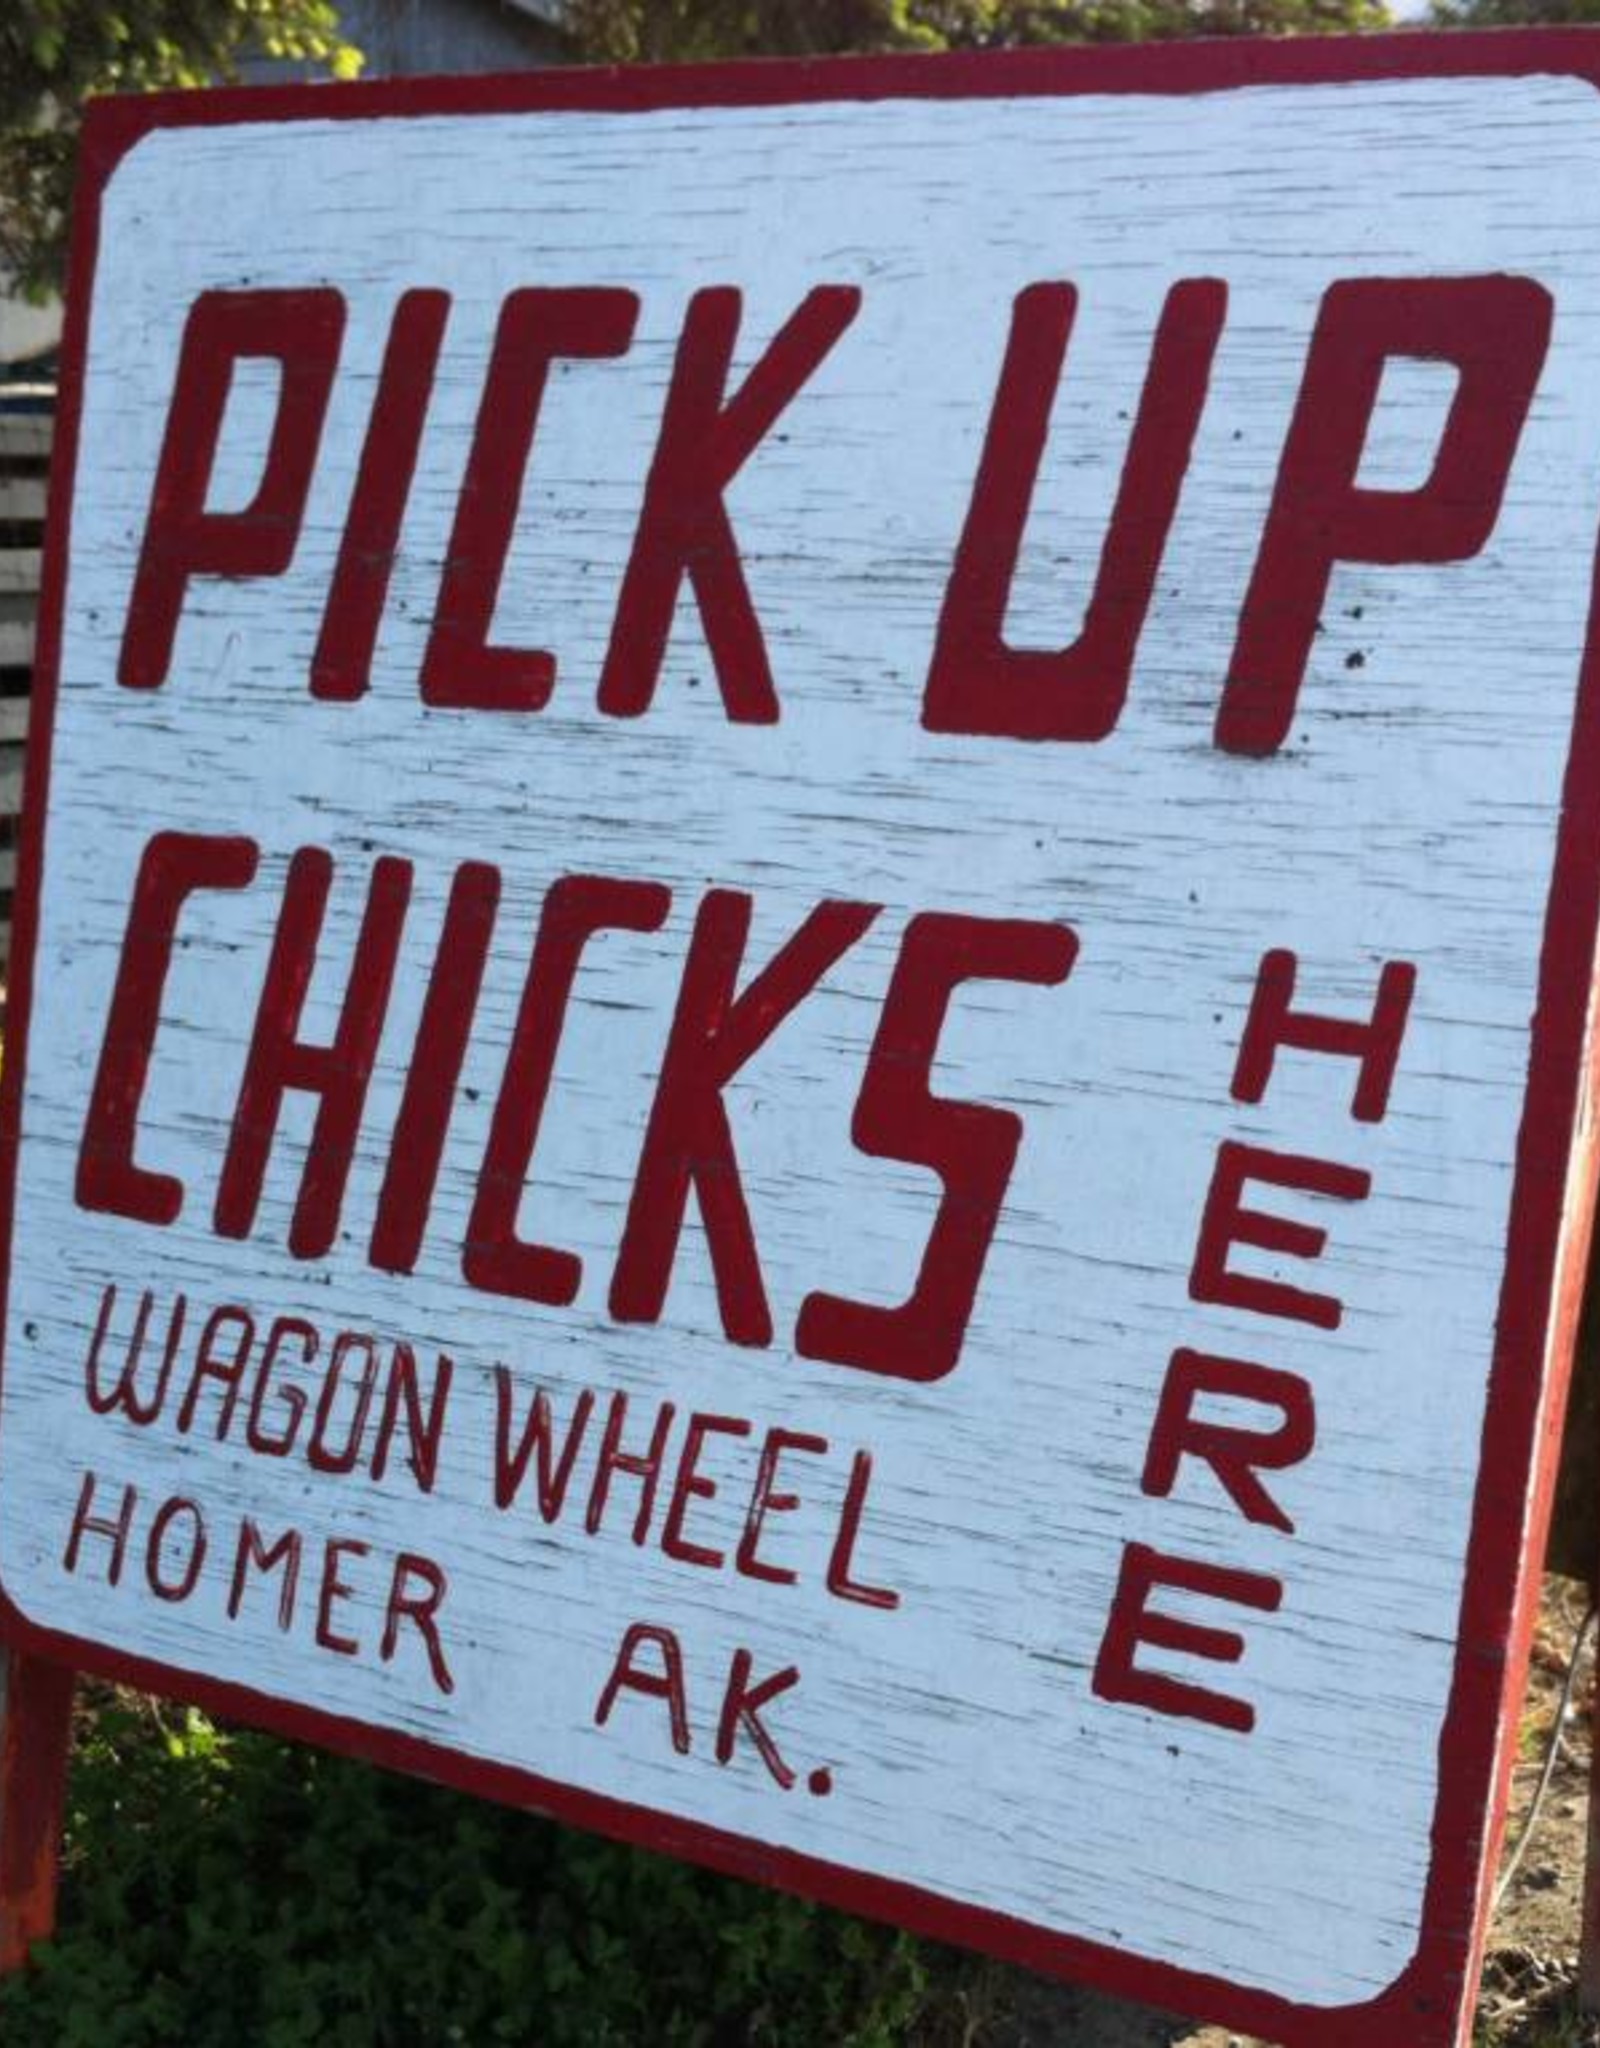 Chicks at the Wagon Wheel